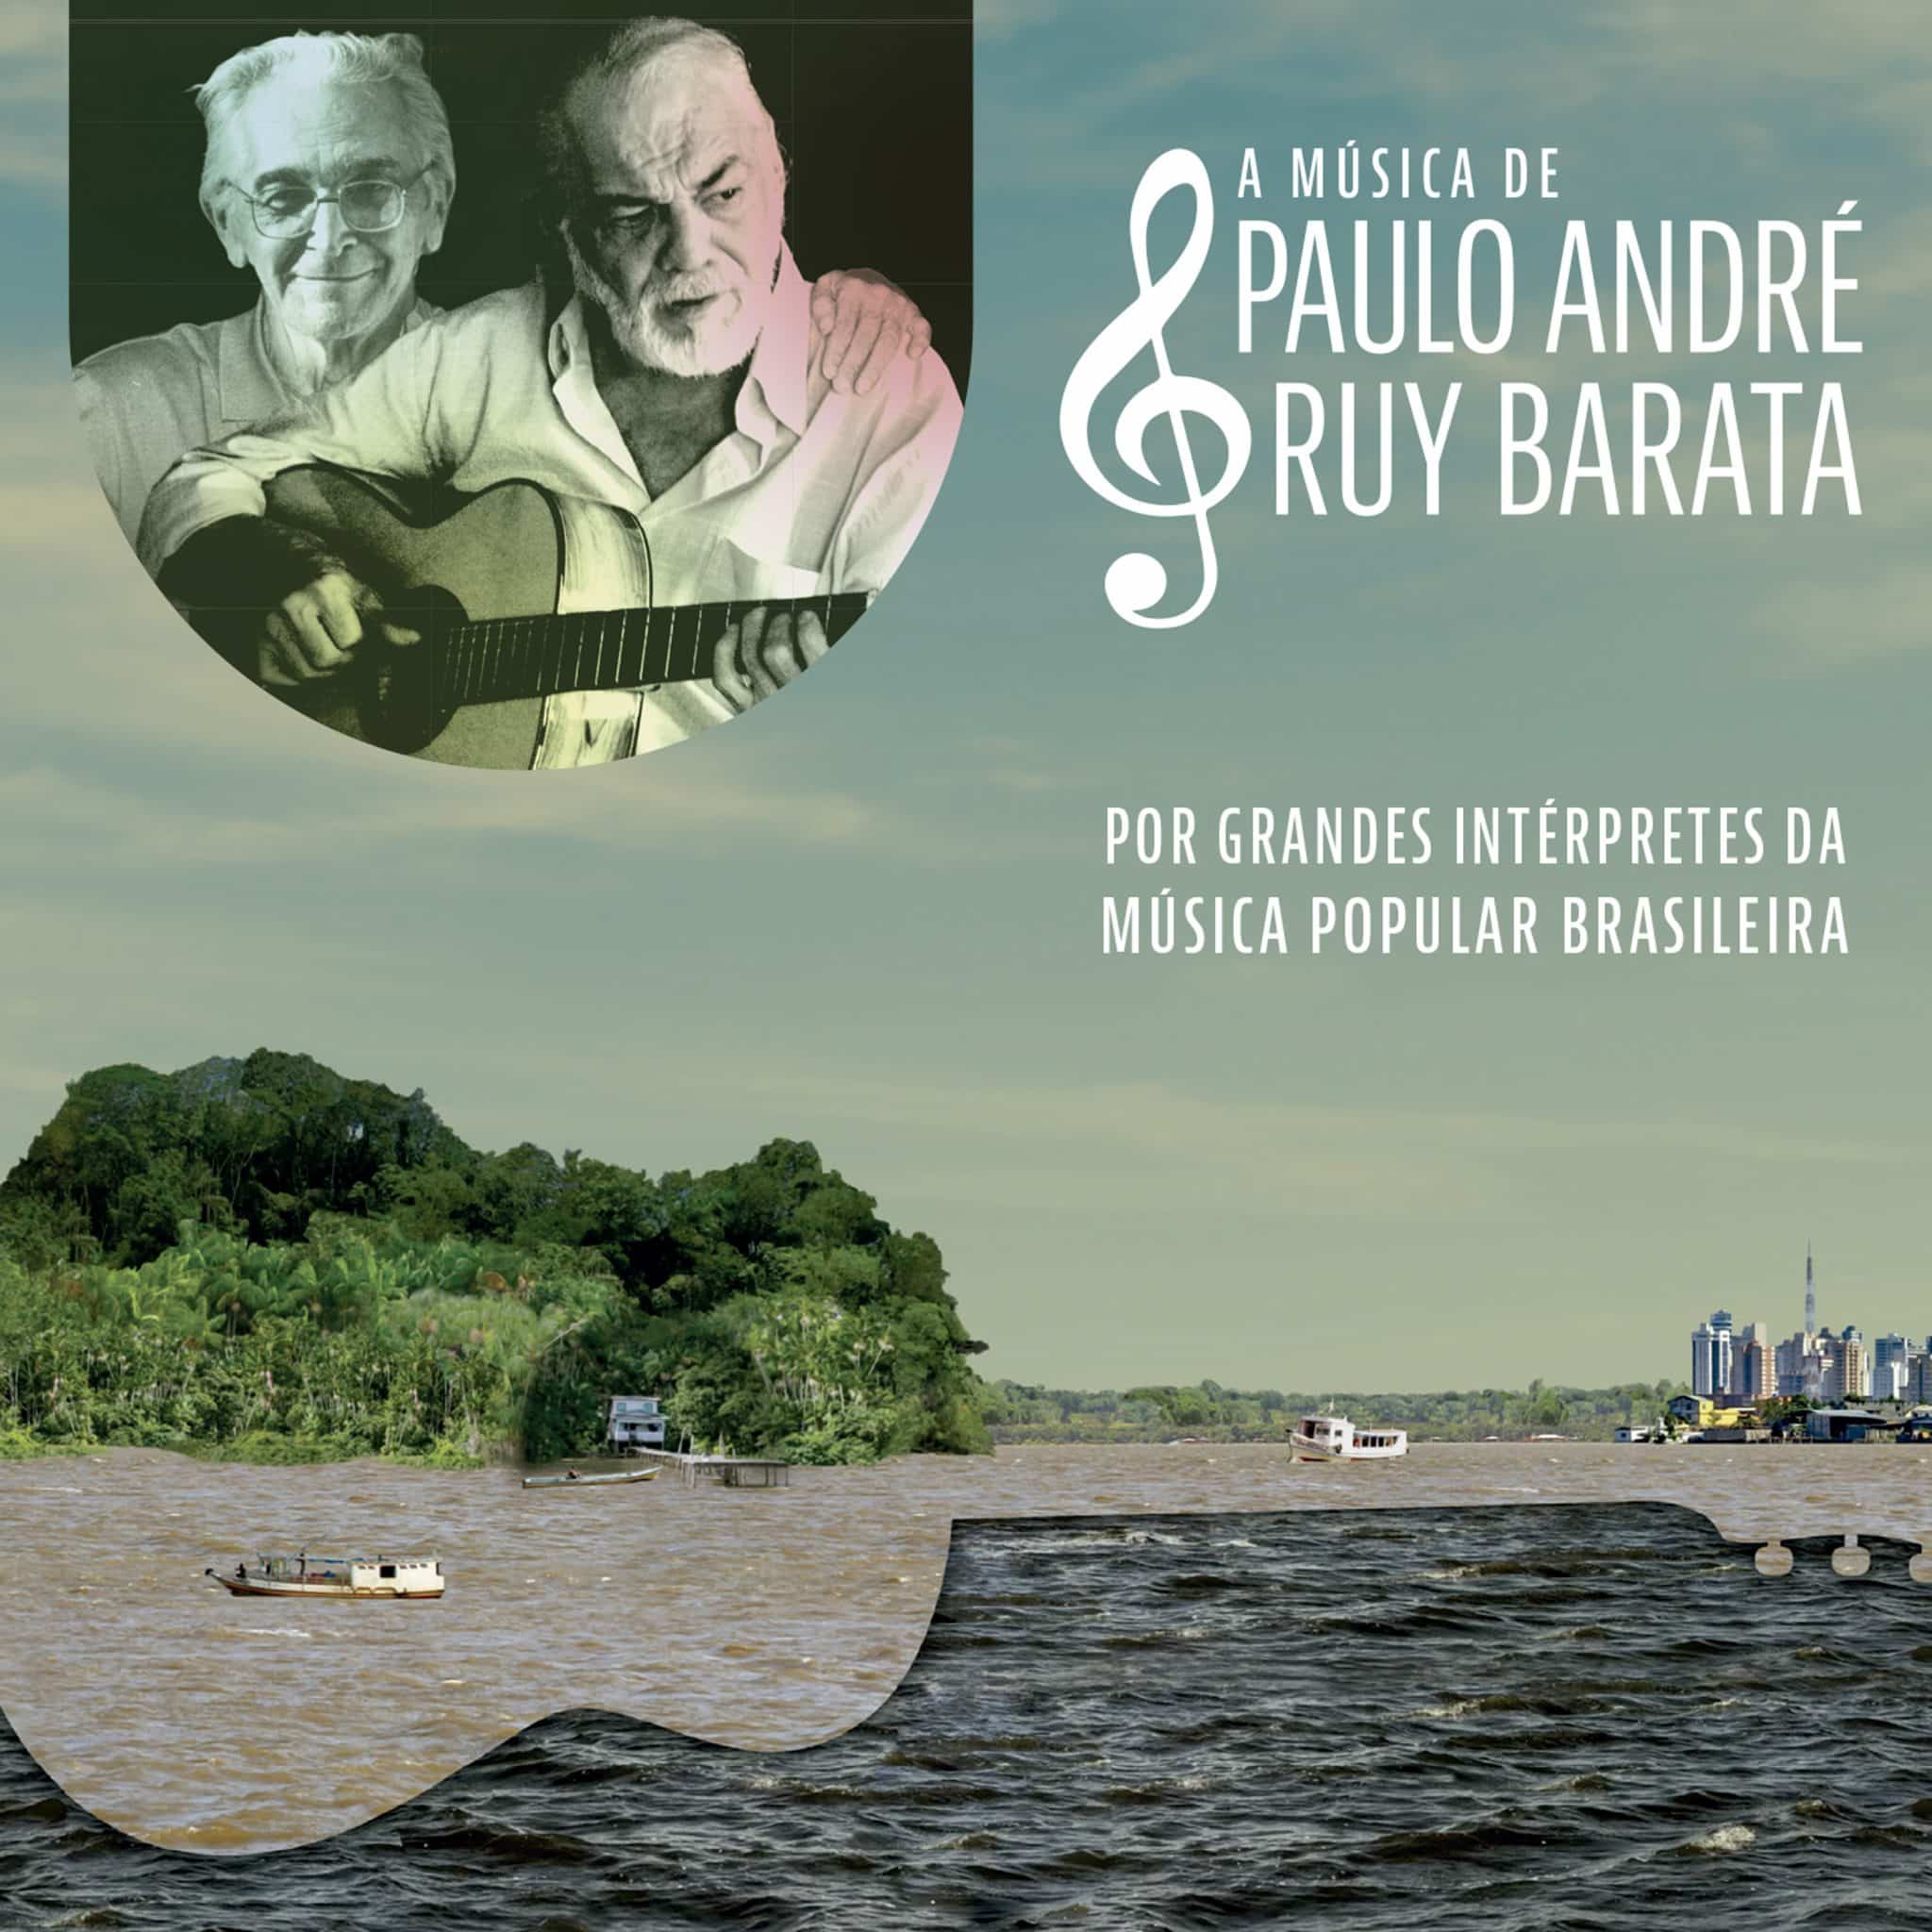 revistaprosaversoearte.com - 'A música de Paulo André e Ruy Barata': álbum celebra a obra do poeta e compositor paraense Ruy Barata